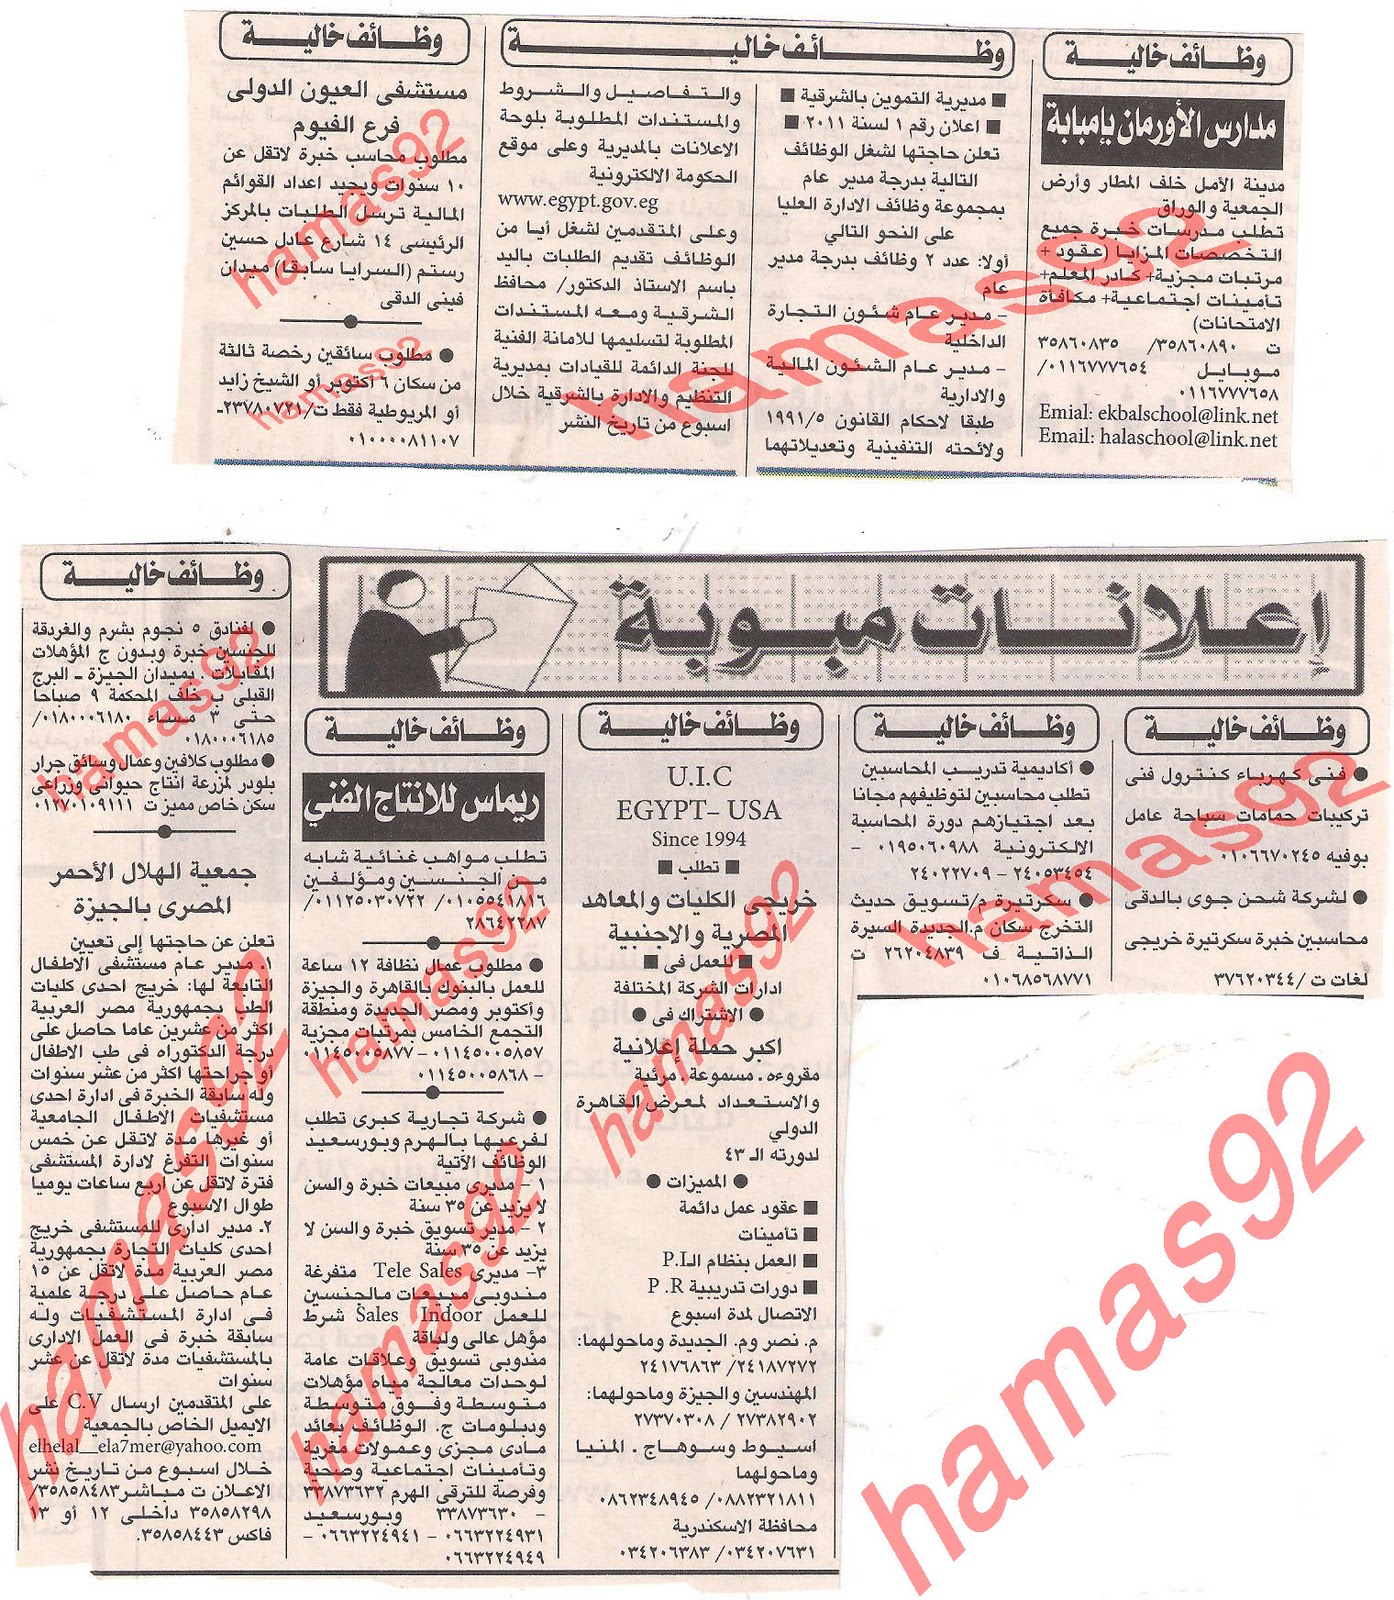 وظائف جريدة الاهرام الثلاثاء 15 نوفمبر 2011  Picture+002